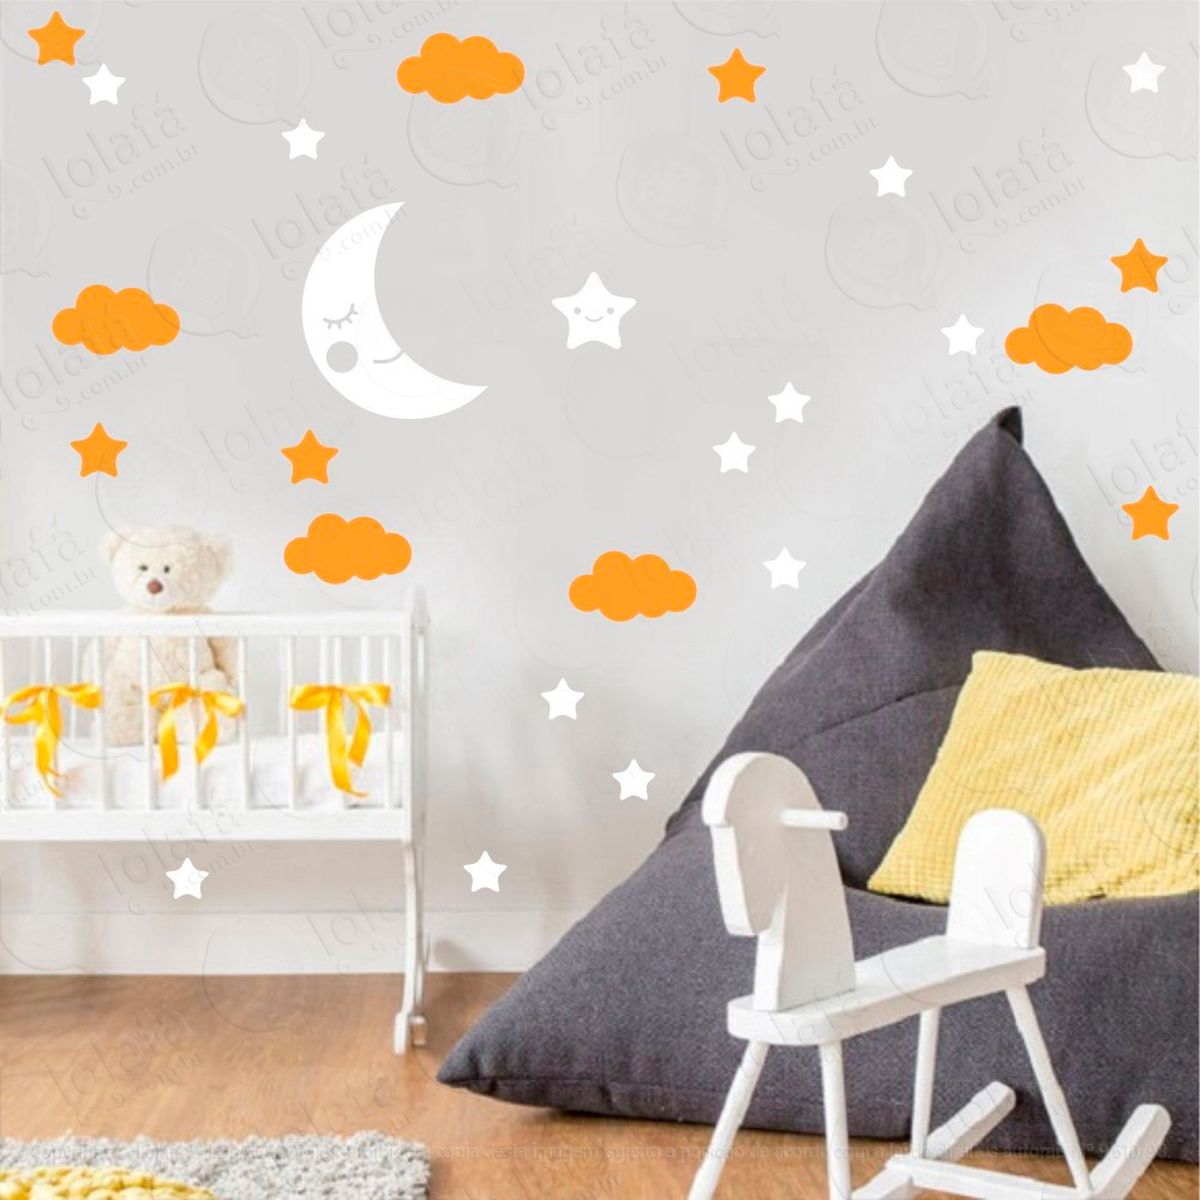 adesivos lua nuvens e estrelas 38 peças adesivos para quarto de bebê infantil - mod:659